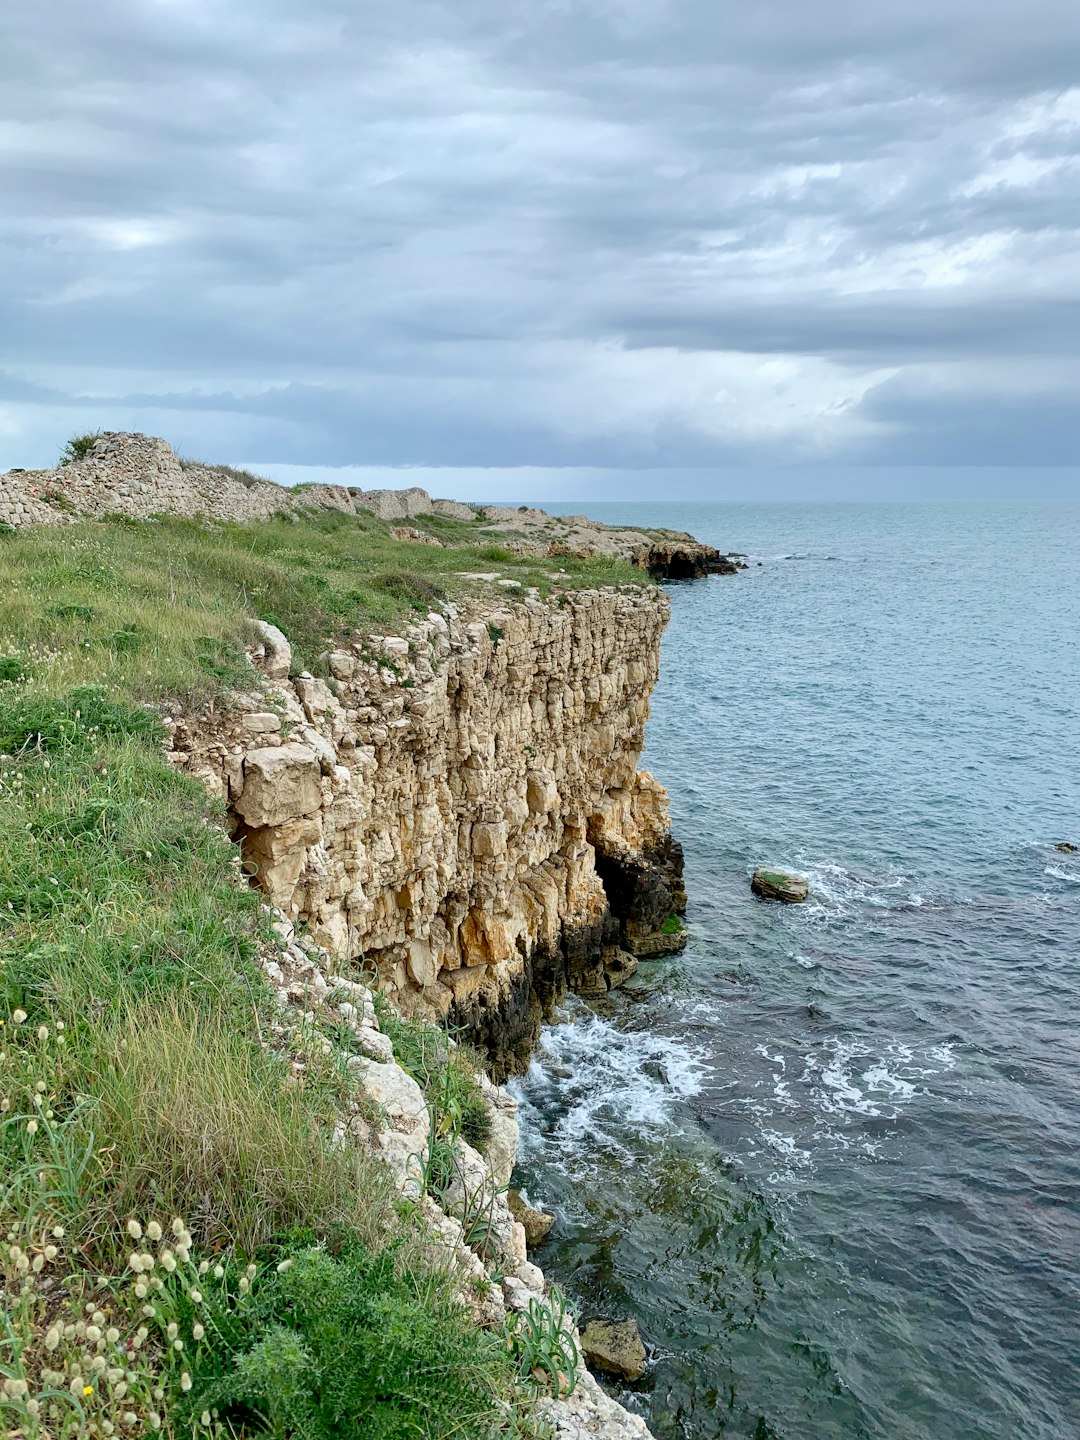 Cliff photo spot Unnamed Road Polignano a Mare